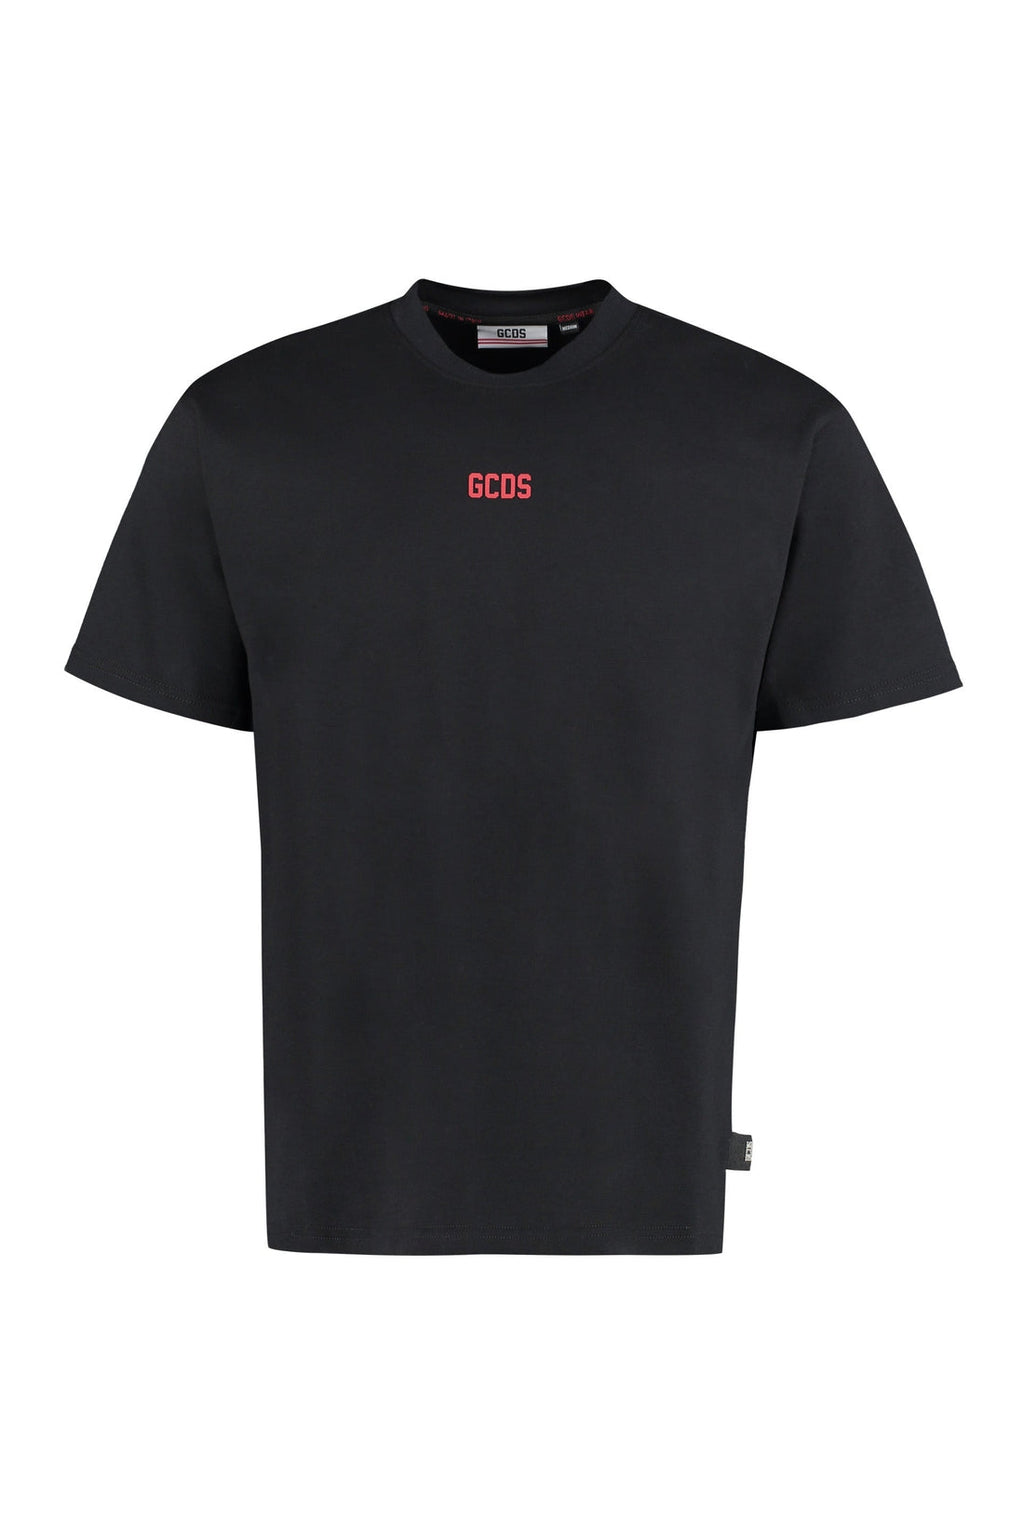 GCDS-OUTLET-SALE-Logo cotton t-shirt-ARCHIVIST